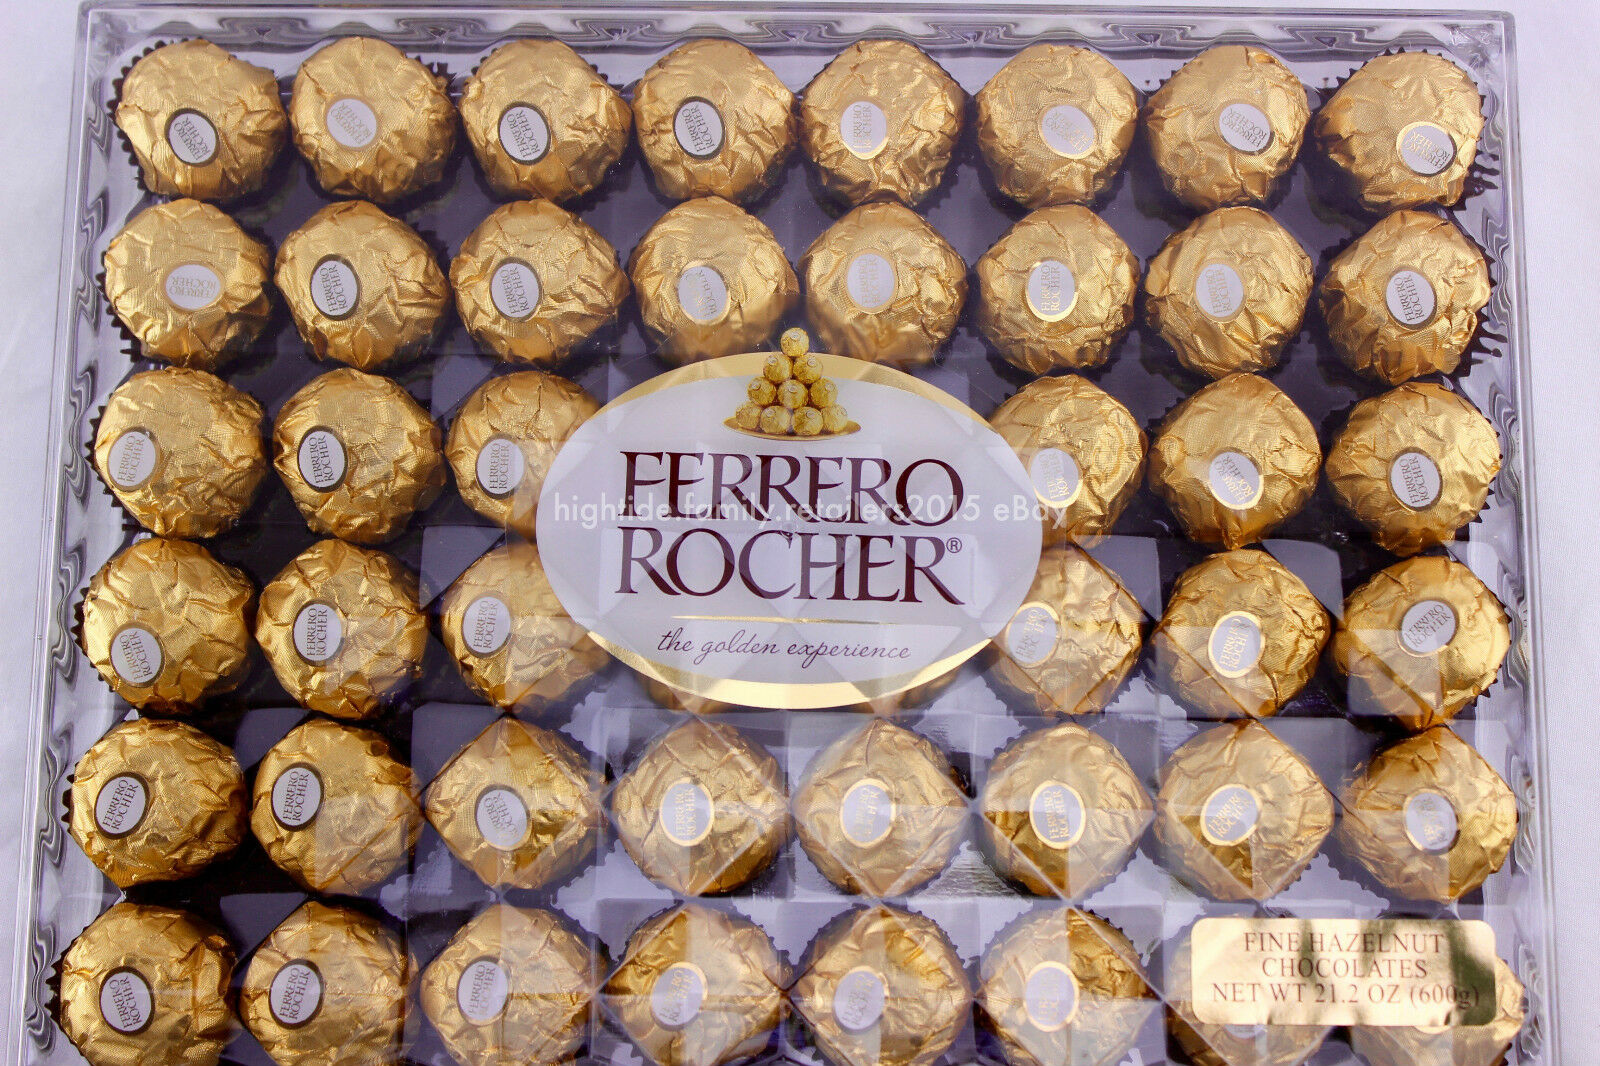 Ferrero Rocher Fine Hazelnuts Milk Wafer Chocolates 21.2 Oz. (600g) 48 Pieces